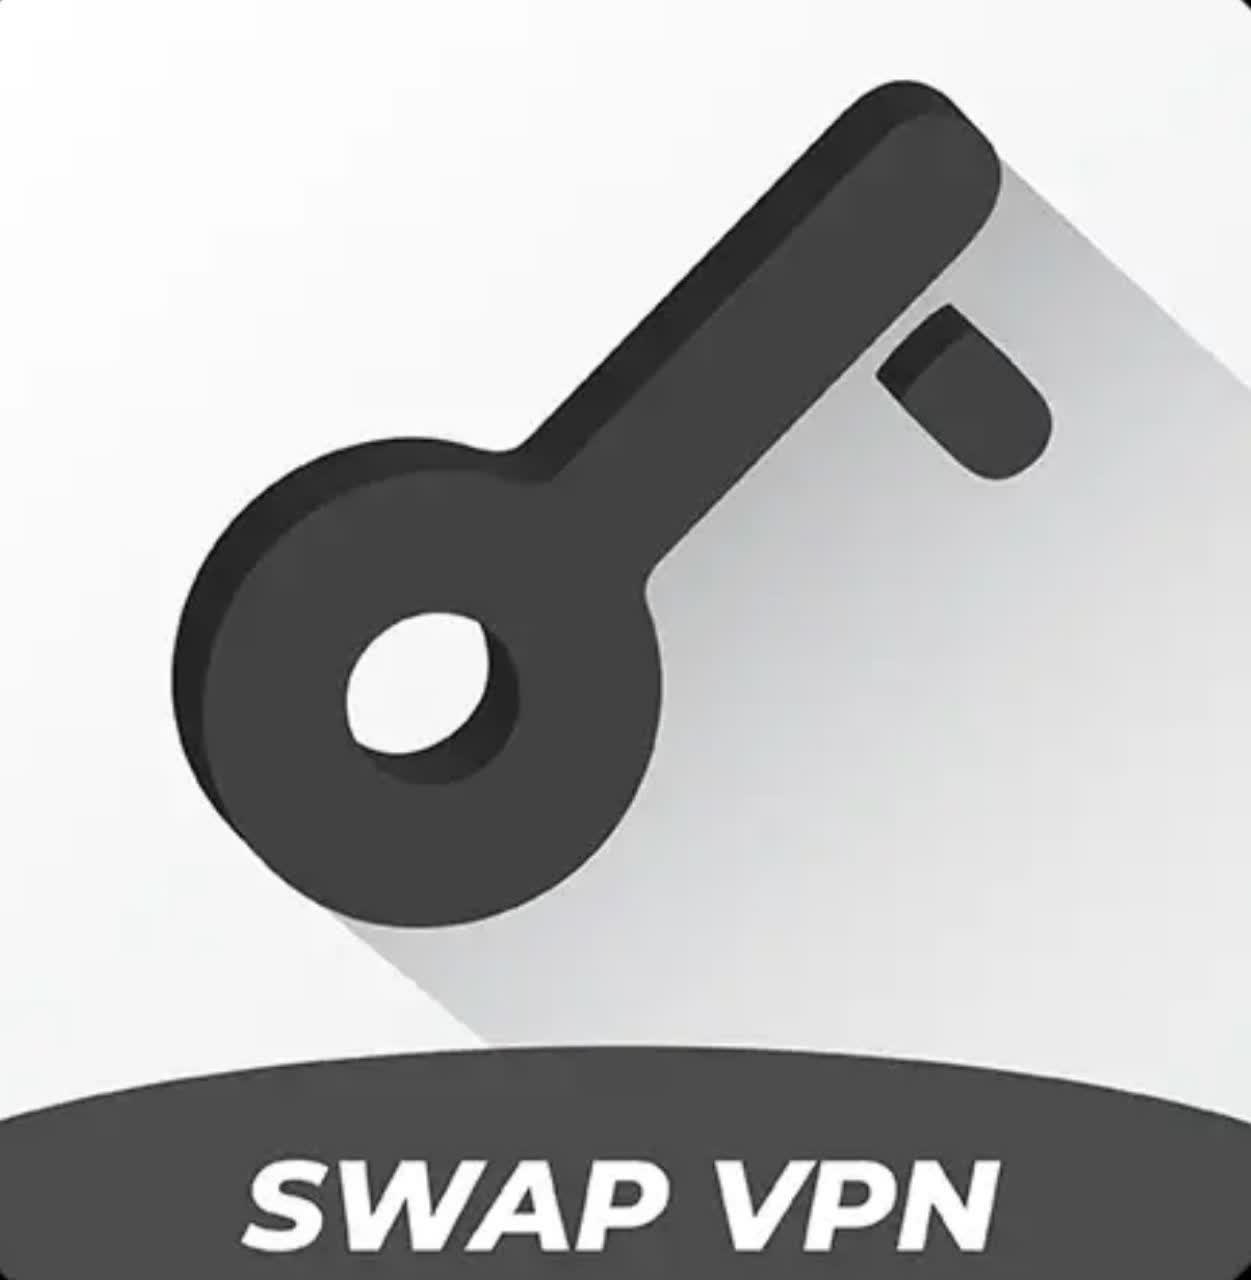 دانلود فیلتر شکن Swap Vpn نسخه مود شده